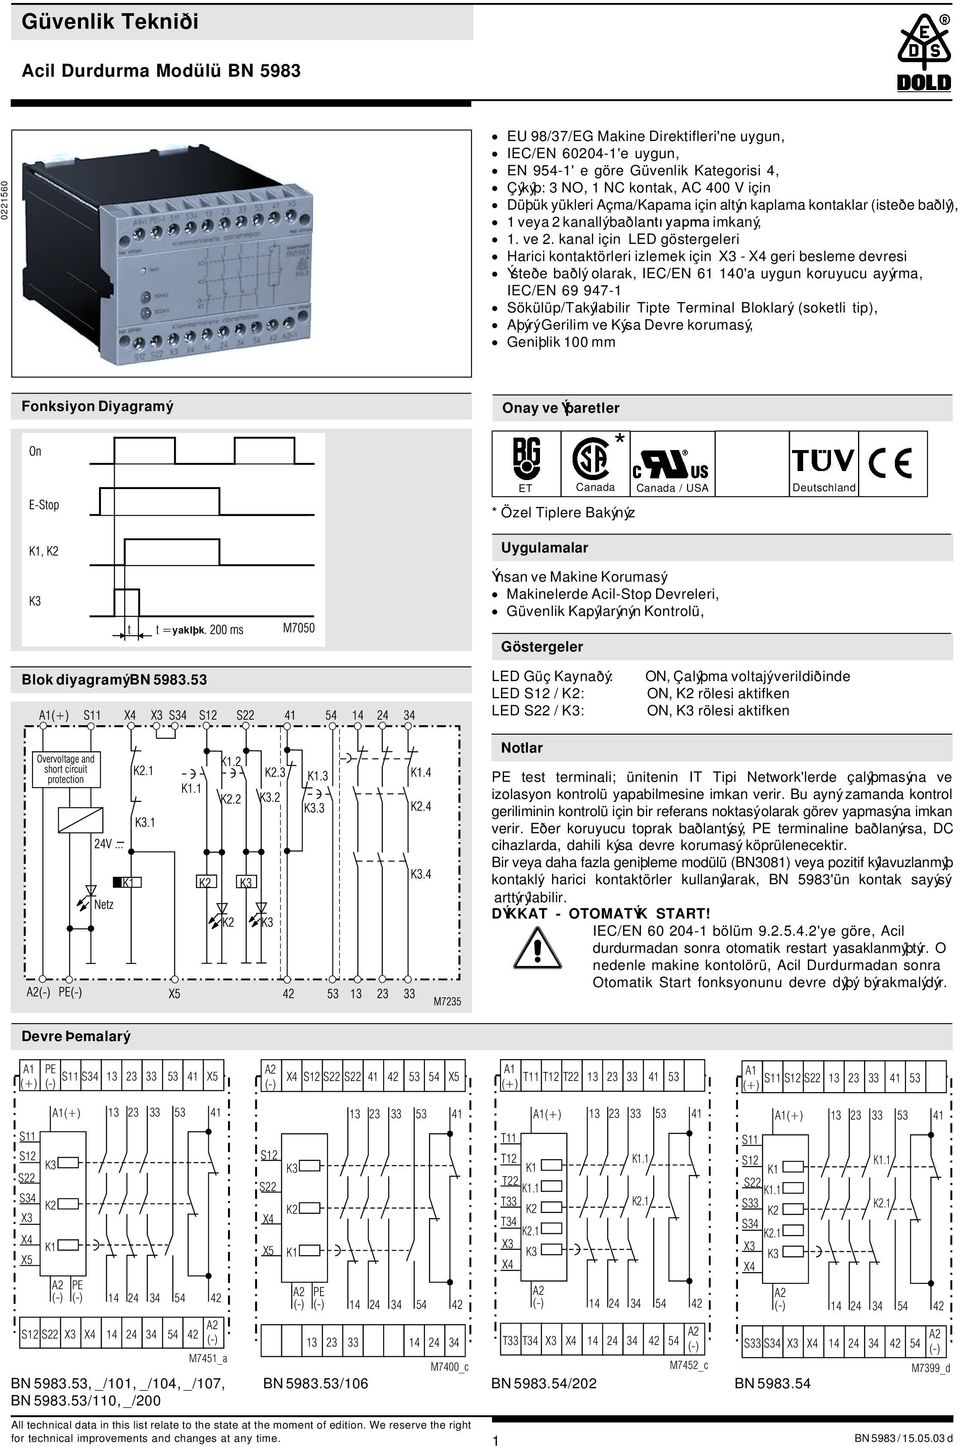 kanal için LED göstergeleri Harici kontaktörleri izlemek için - geri besleme devresi Ýsteðe baðlý olarak, IEC/E 61 140'a uygun koruyucu ayýrma, IEC/E 69 947-1 Sökülüp/Takýlabilir Tipte Terminal